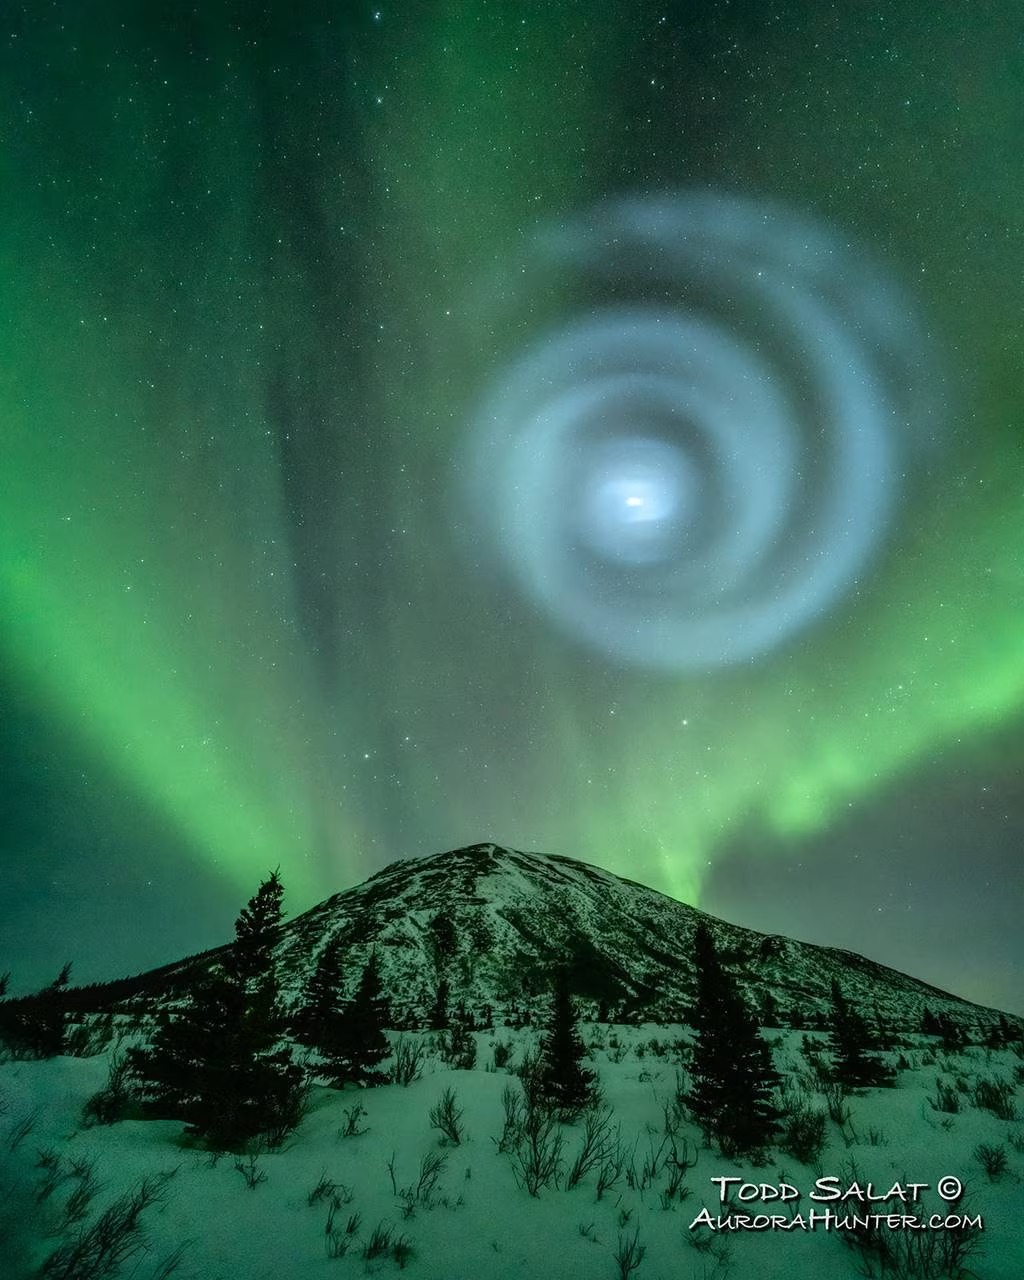 Bầu trời Alaska bỗng xuất hiện một hình xoắn ốc kỳ lạ, và lời lý giải đơn giản đến bất ngờ - Ảnh 3.